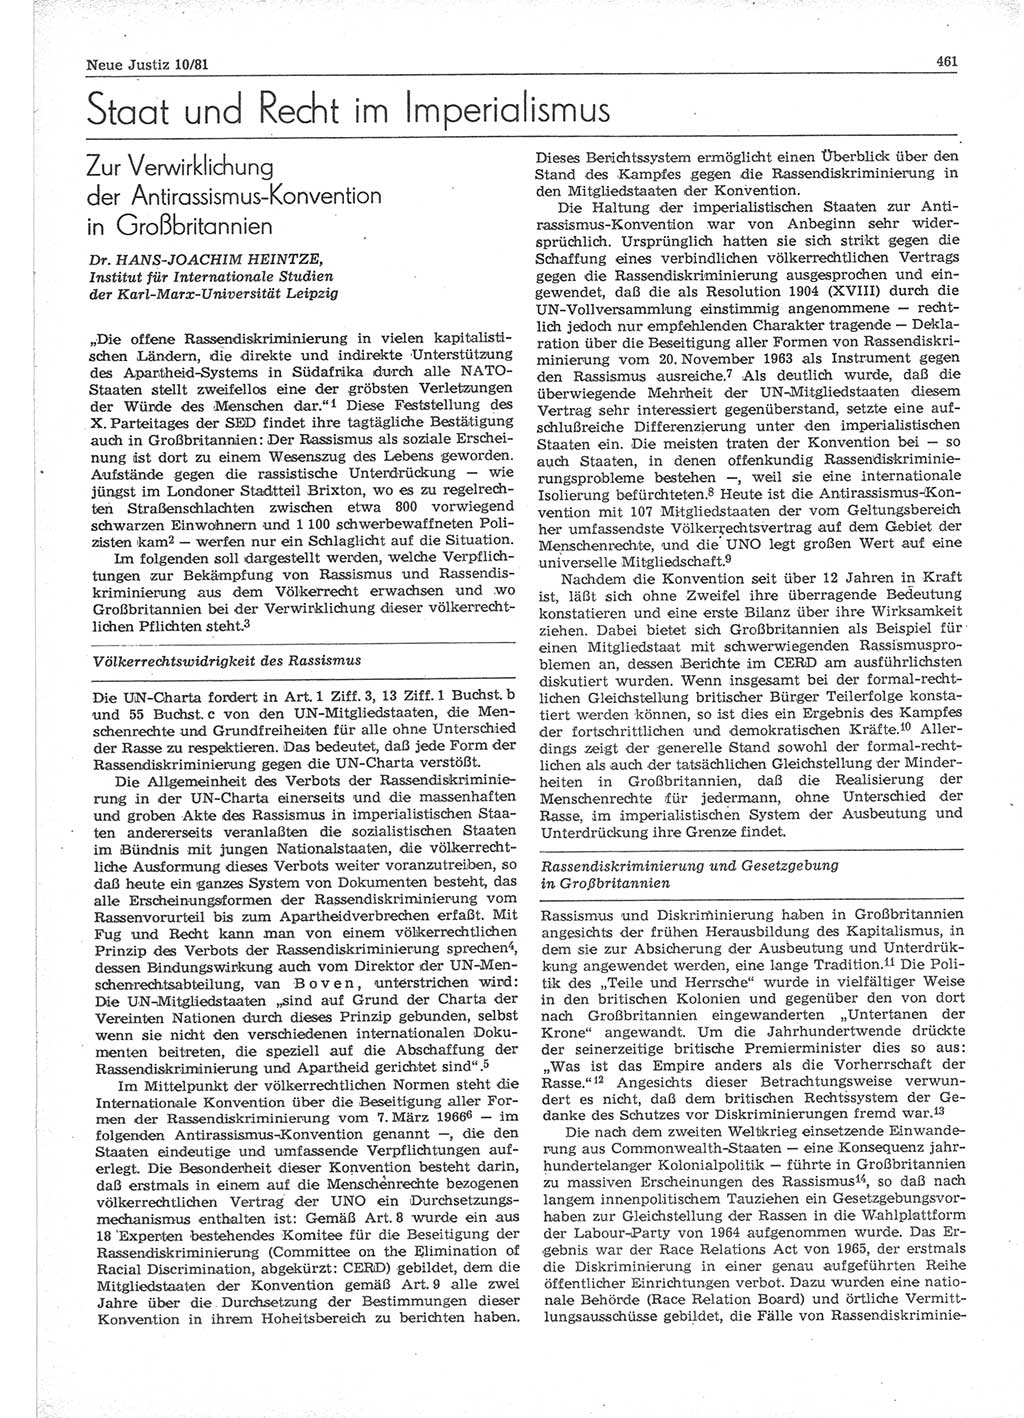 Neue Justiz (NJ), Zeitschrift für sozialistisches Recht und Gesetzlichkeit [Deutsche Demokratische Republik (DDR)], 35. Jahrgang 1981, Seite 461 (NJ DDR 1981, S. 461)